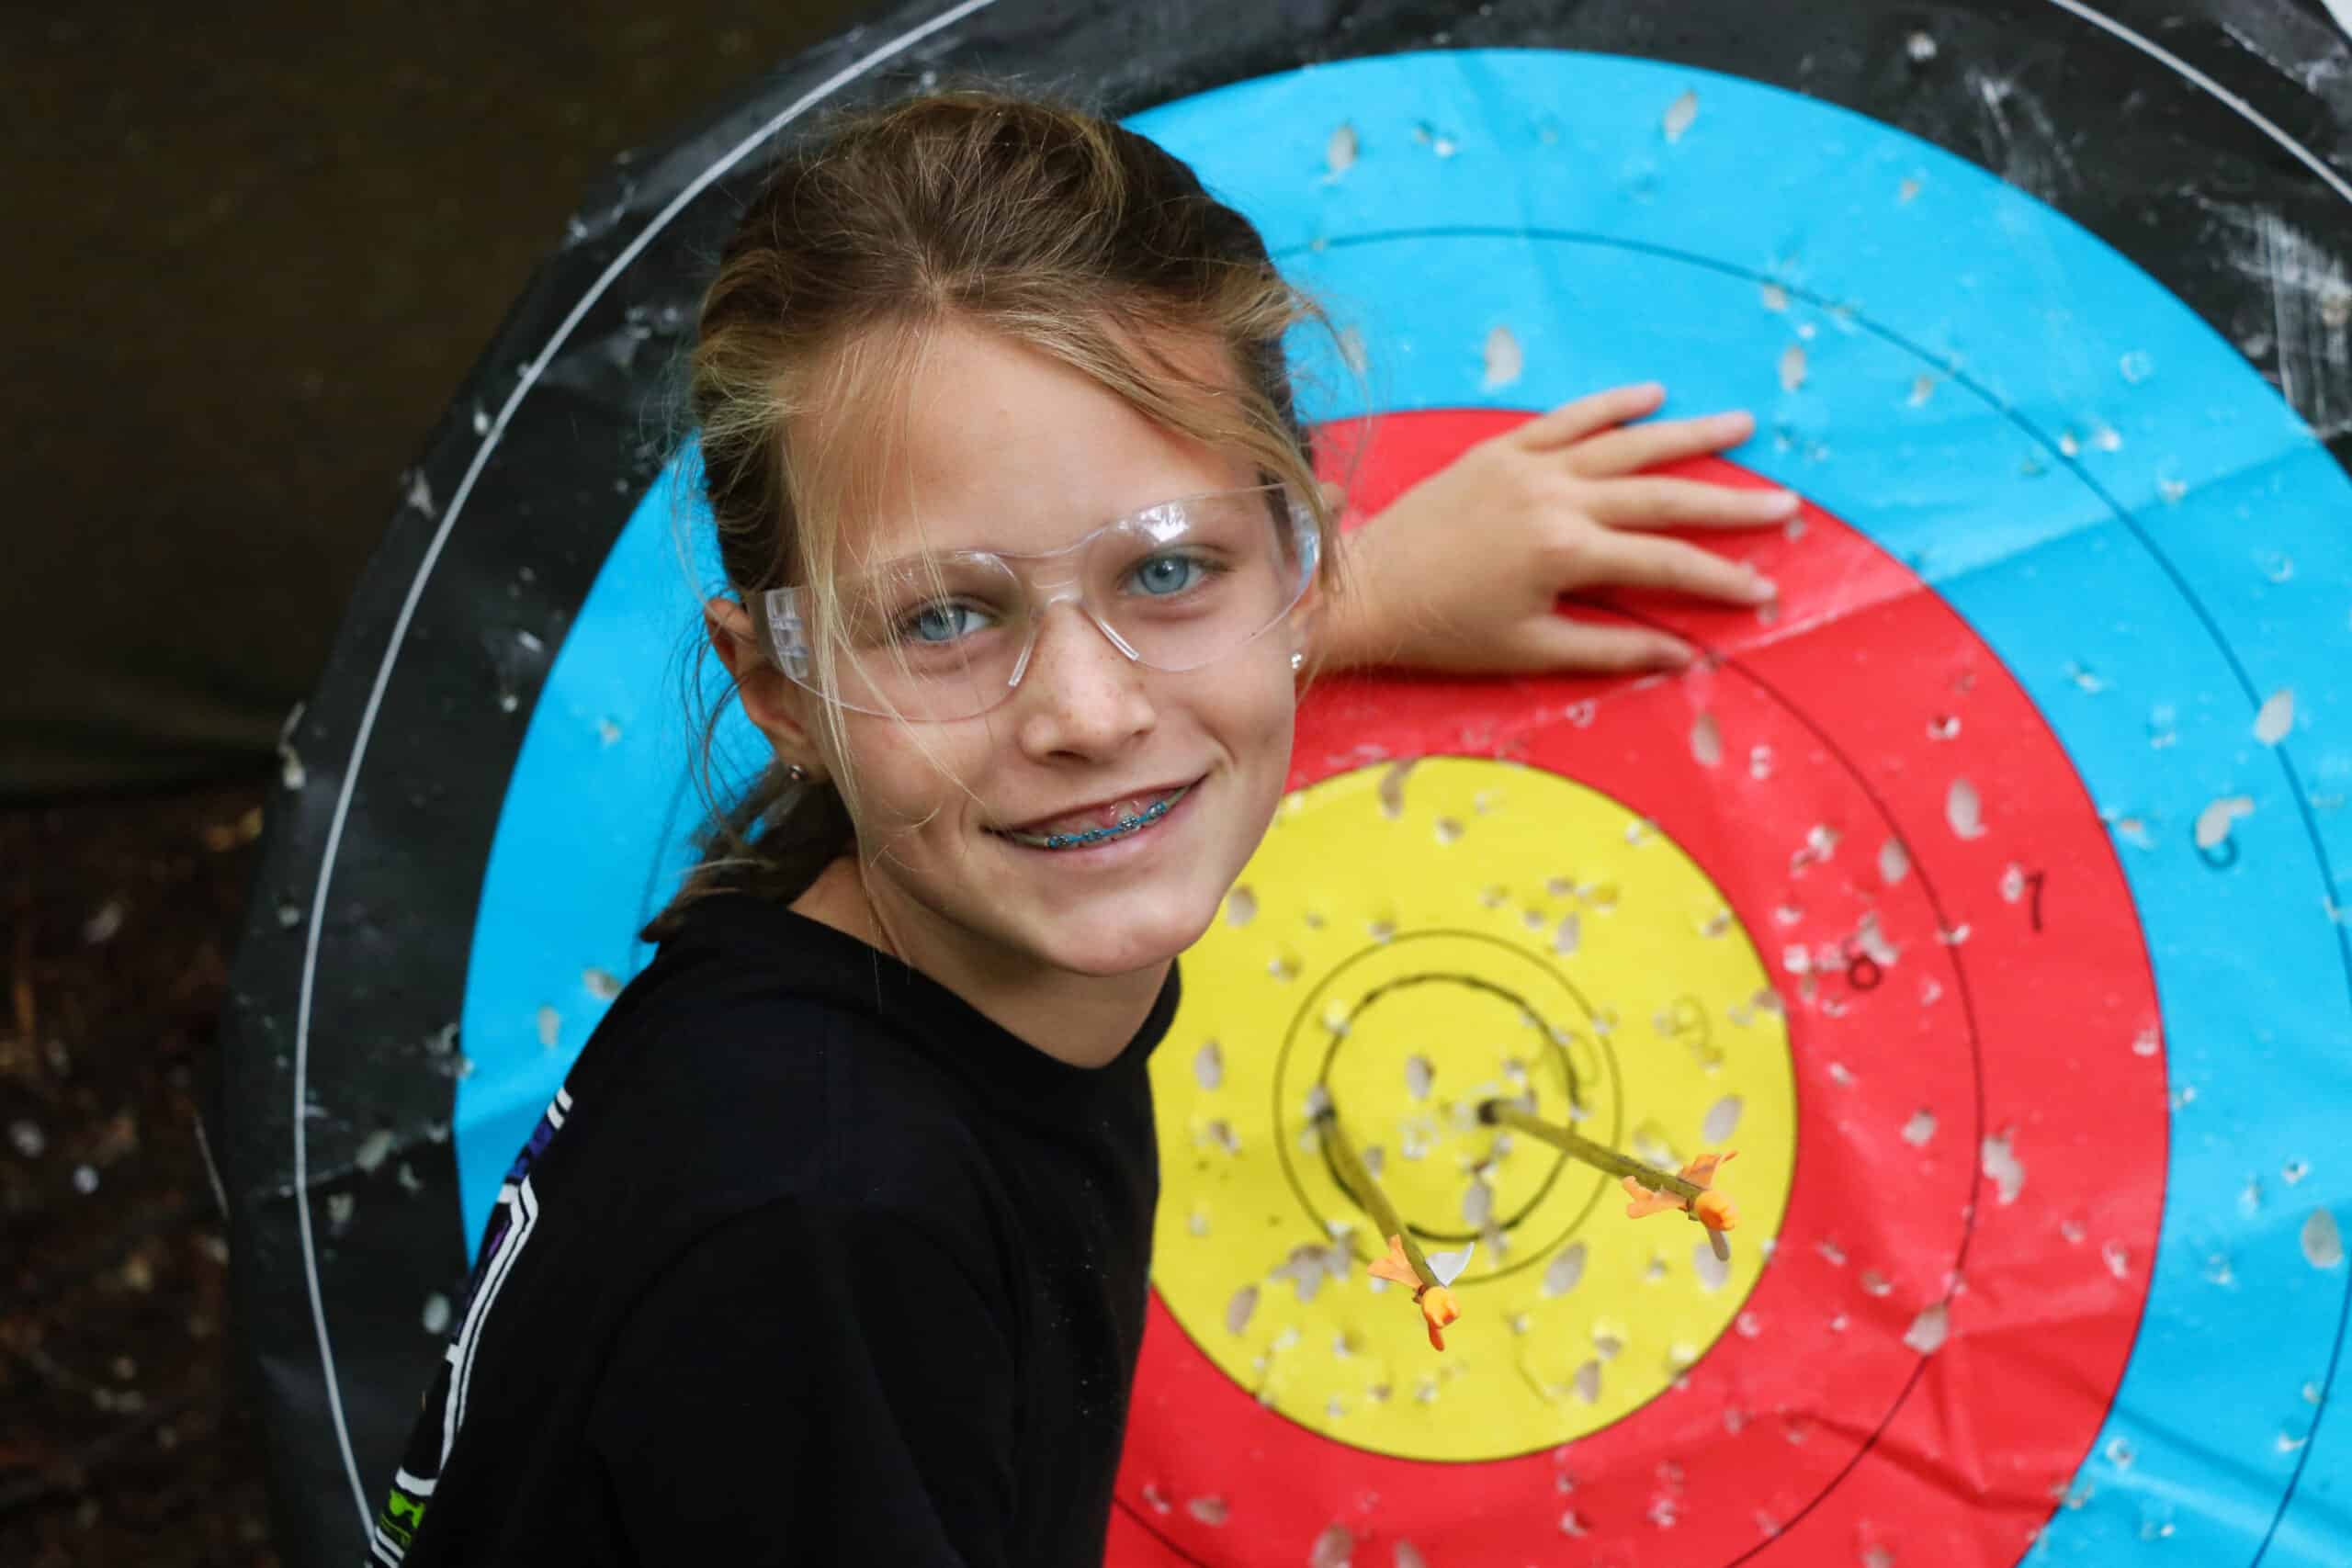 Girl proud of here bullseye in archery